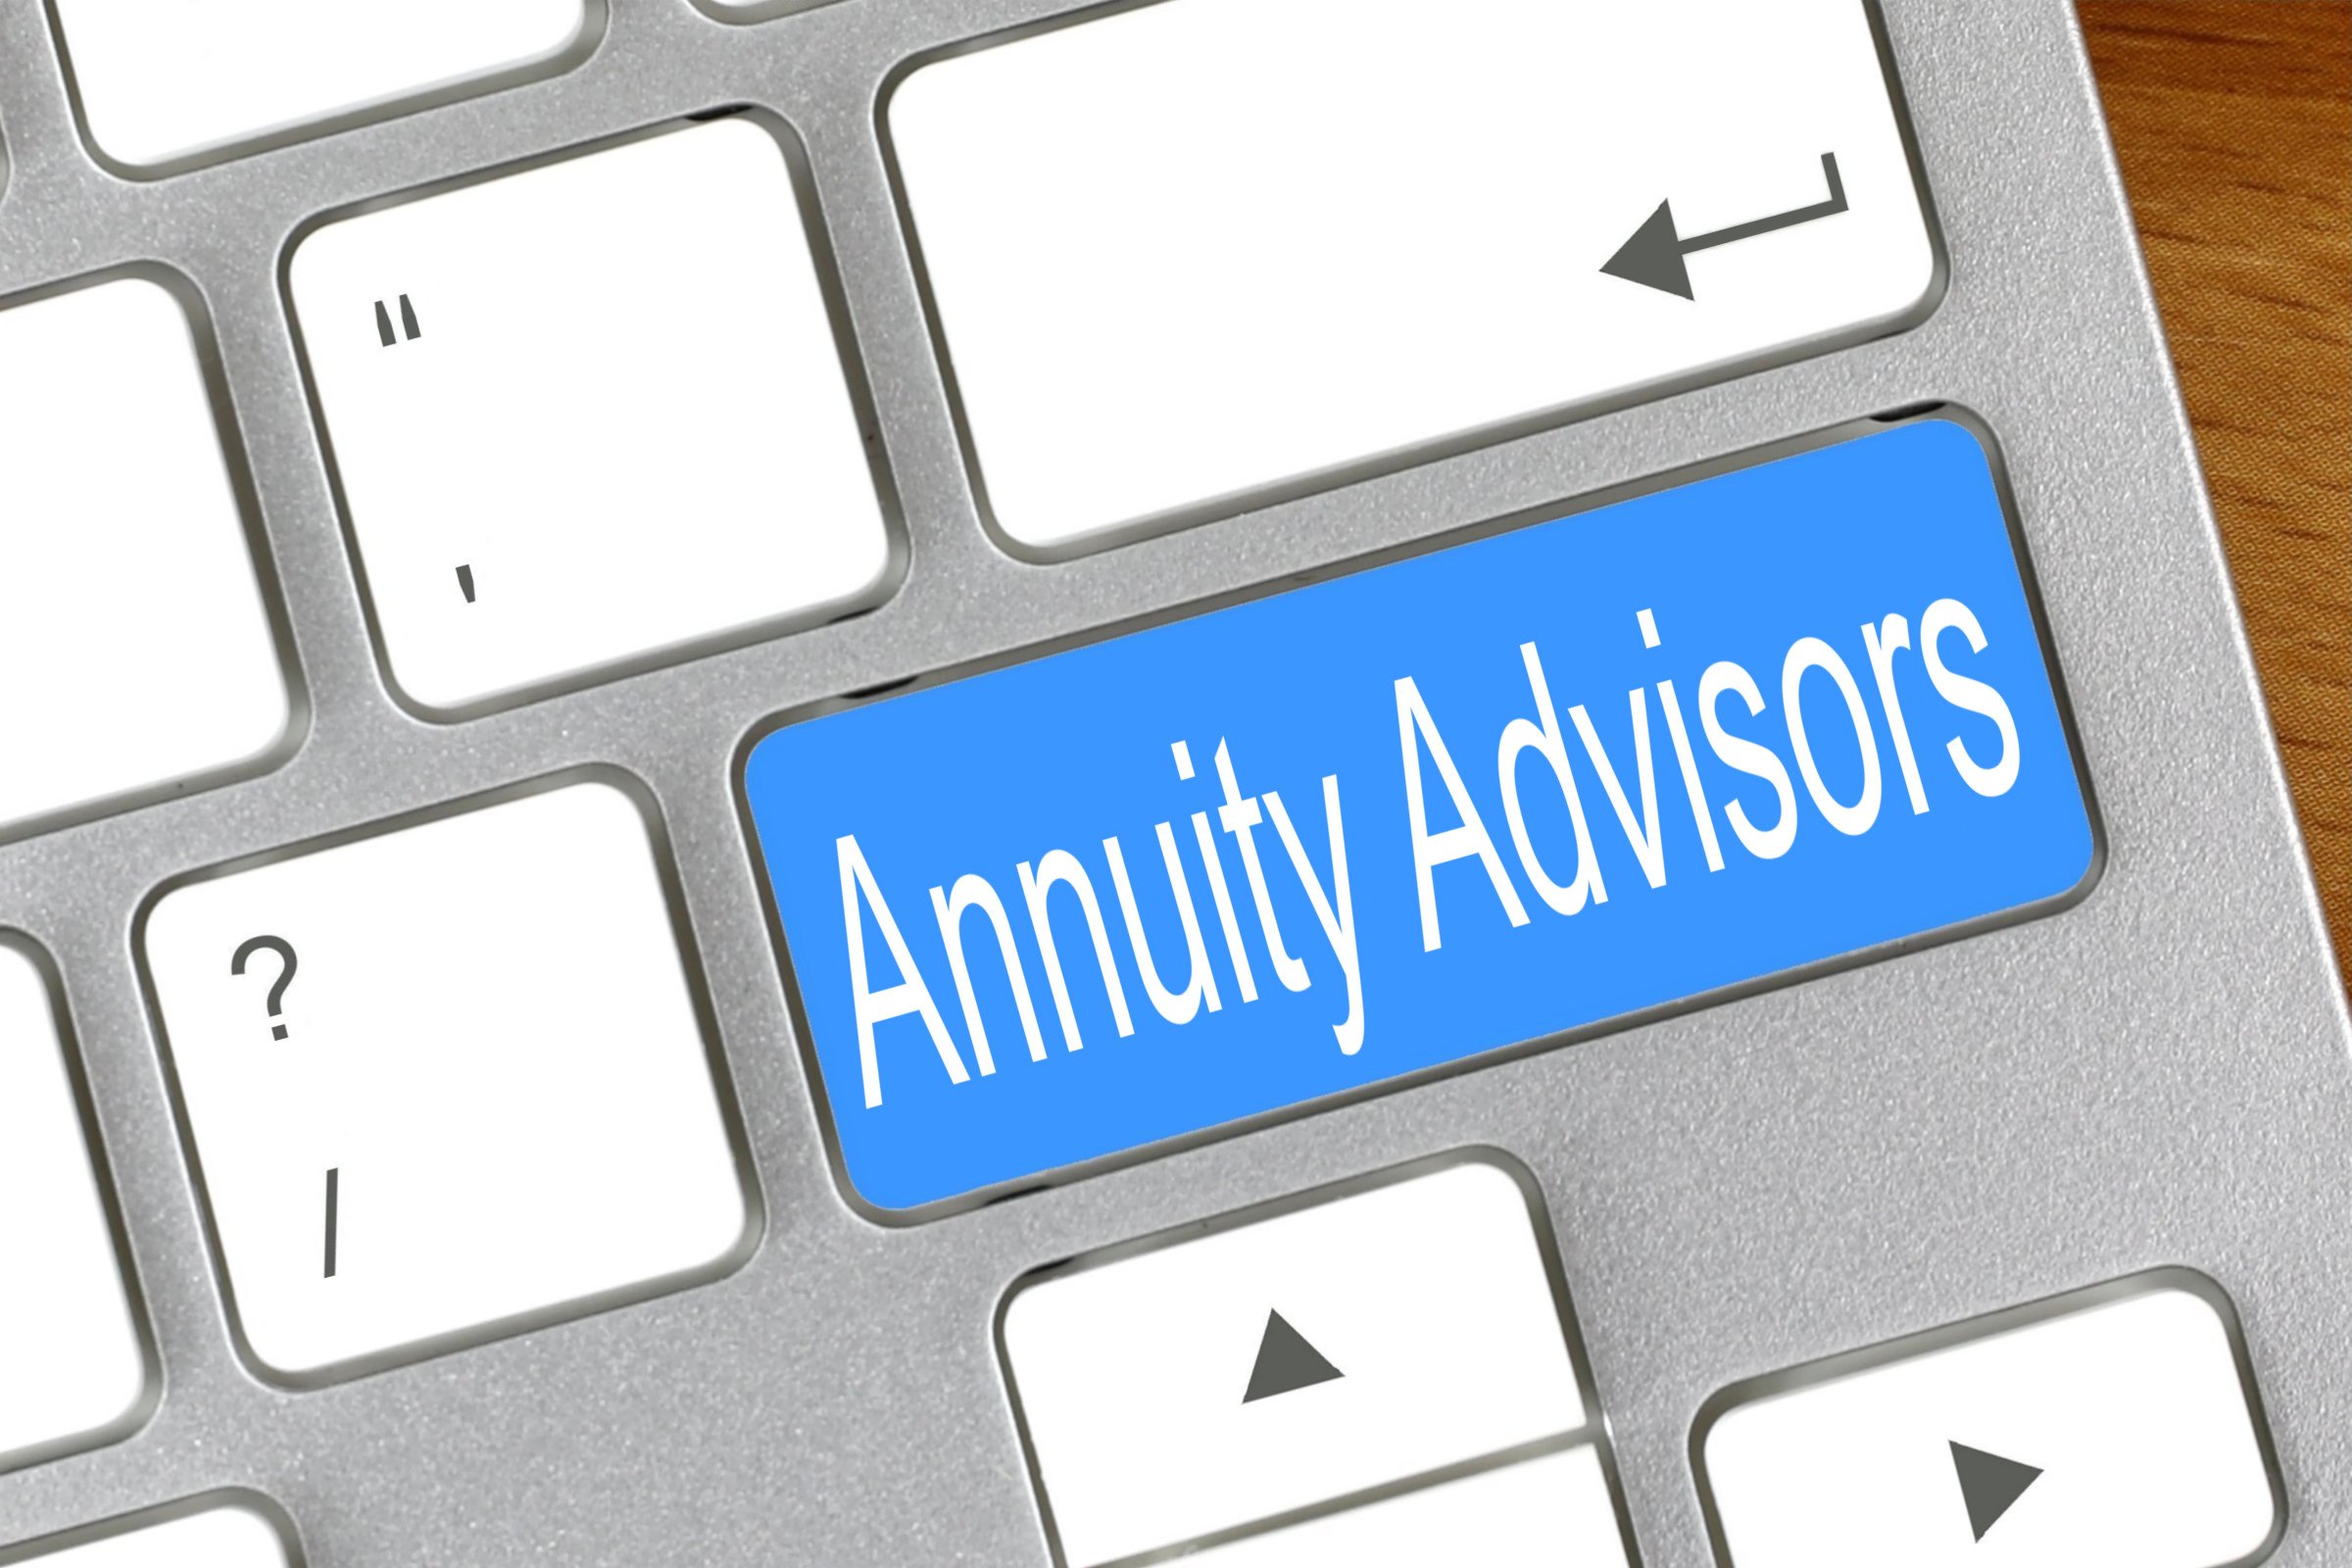 annuity advisors